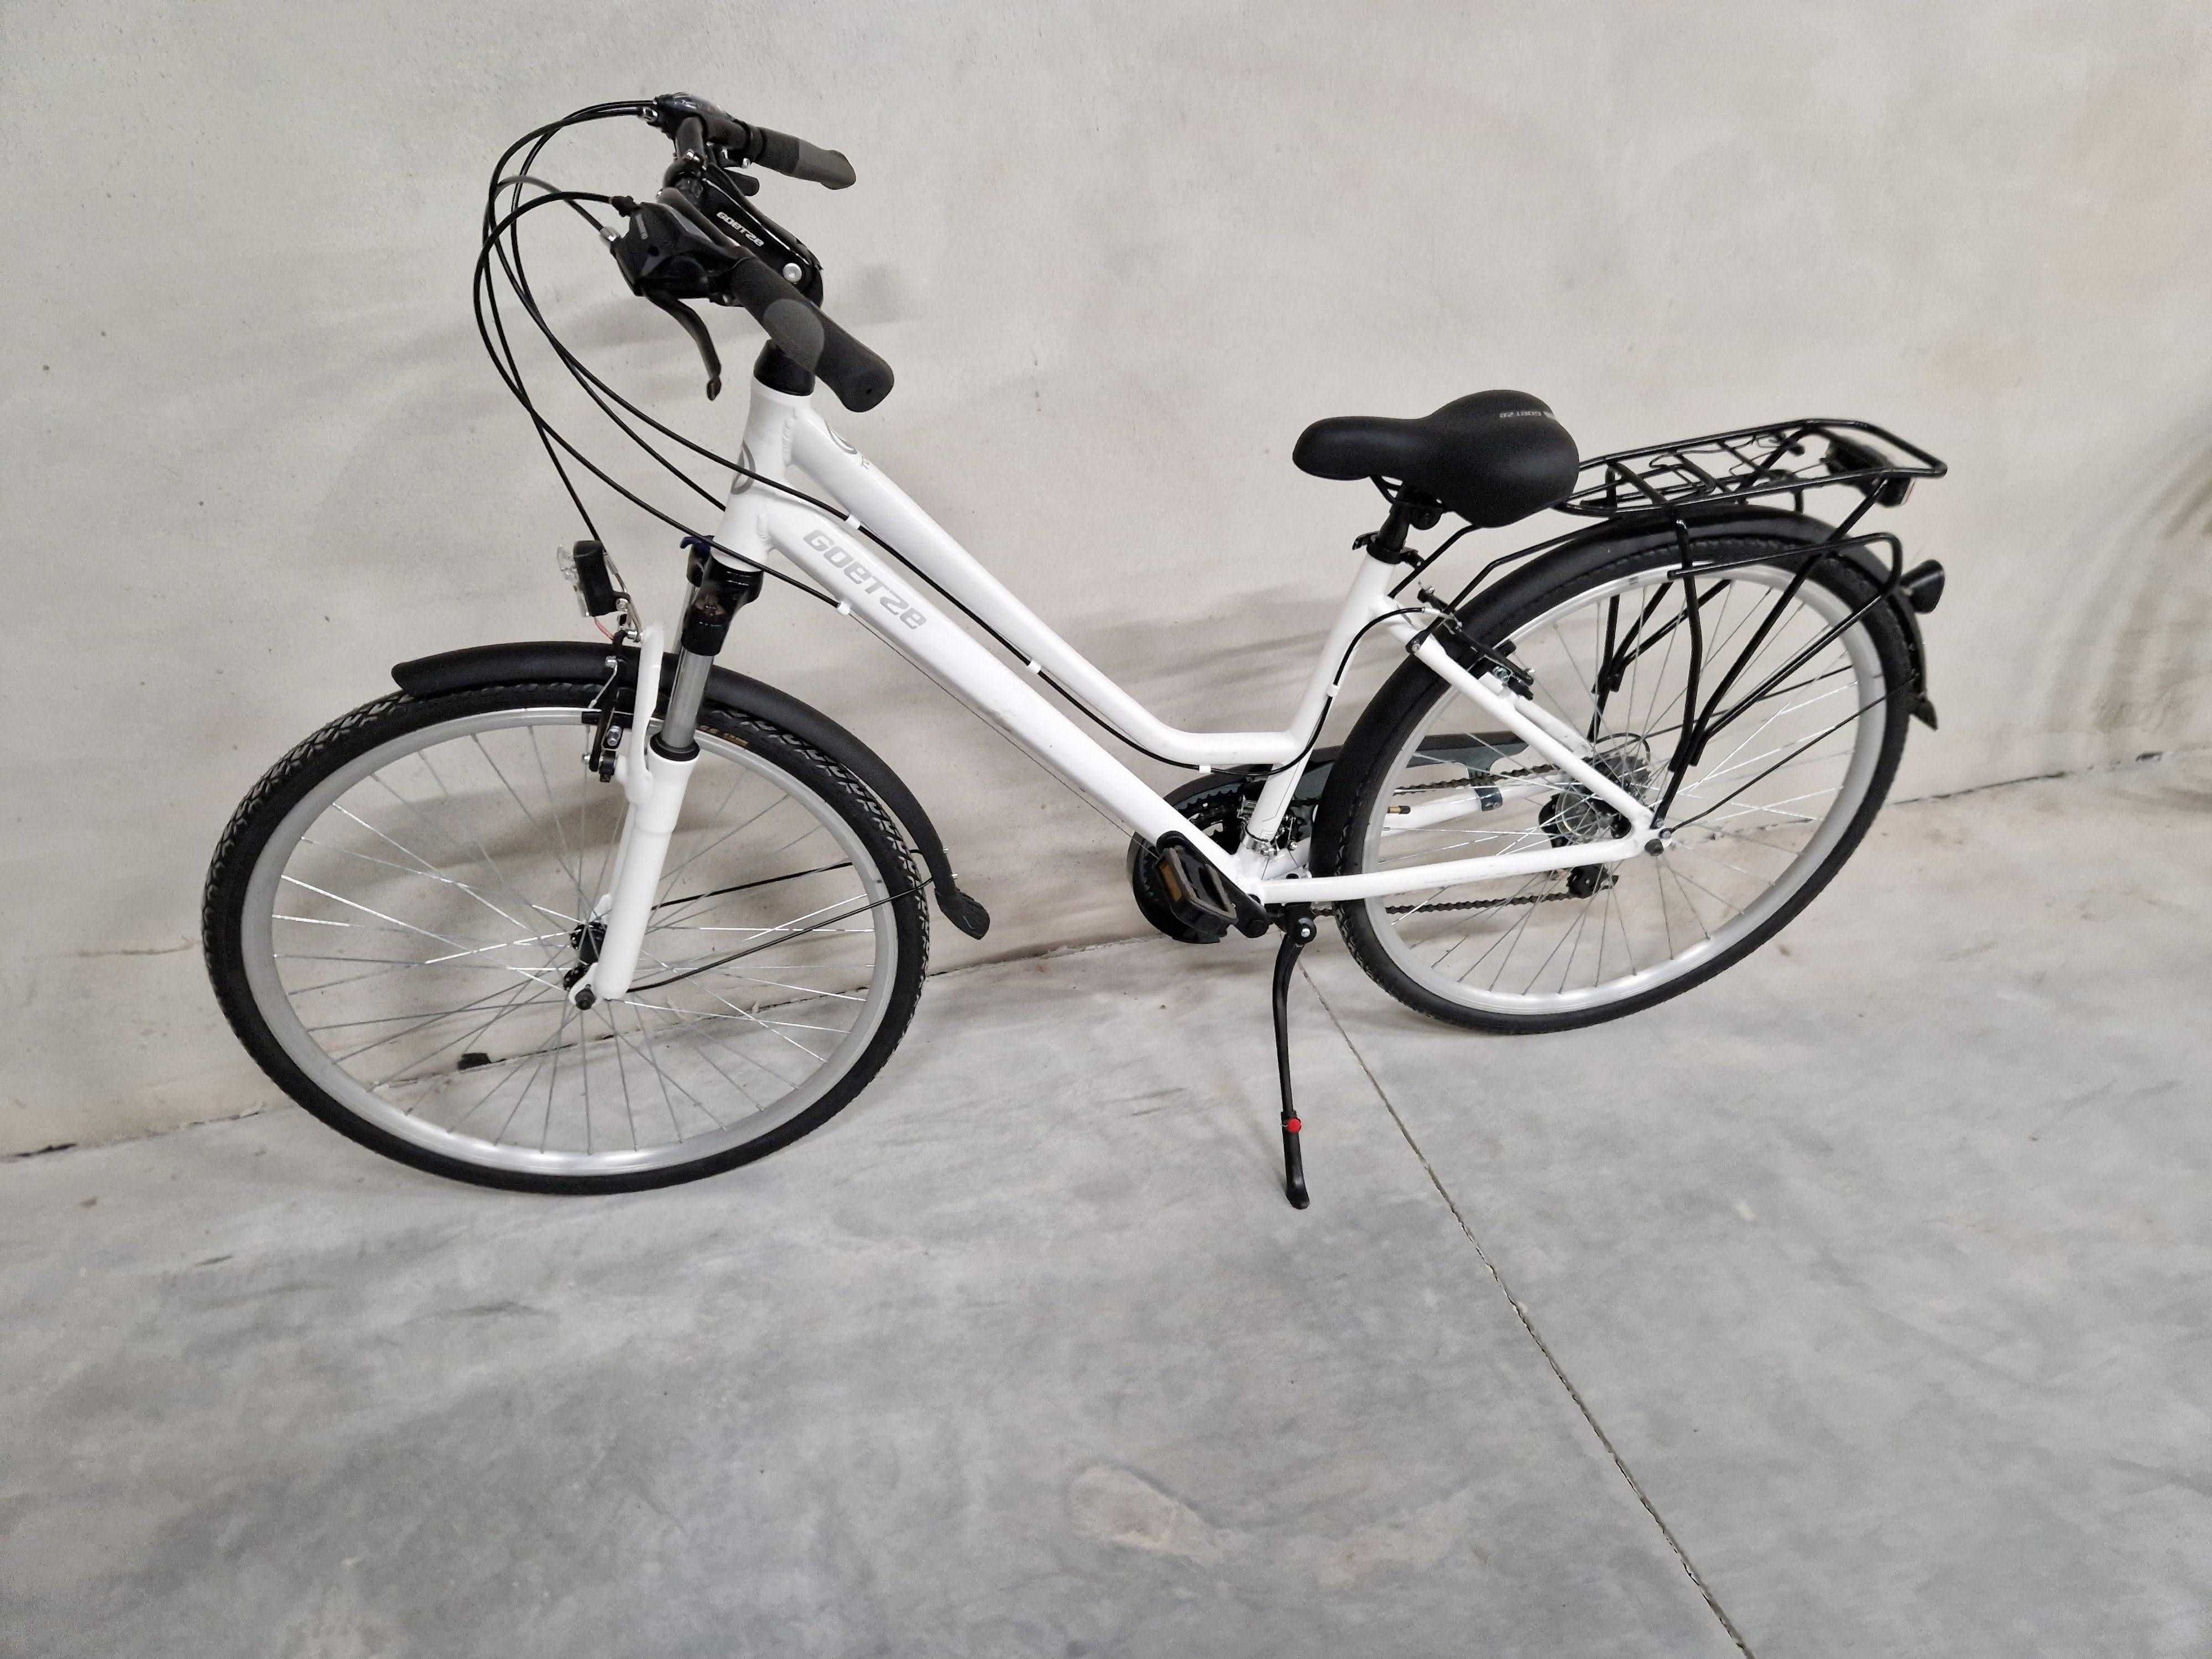 Nowy rower aluminiowy, 21 biegów 150-180 cm wzrostu